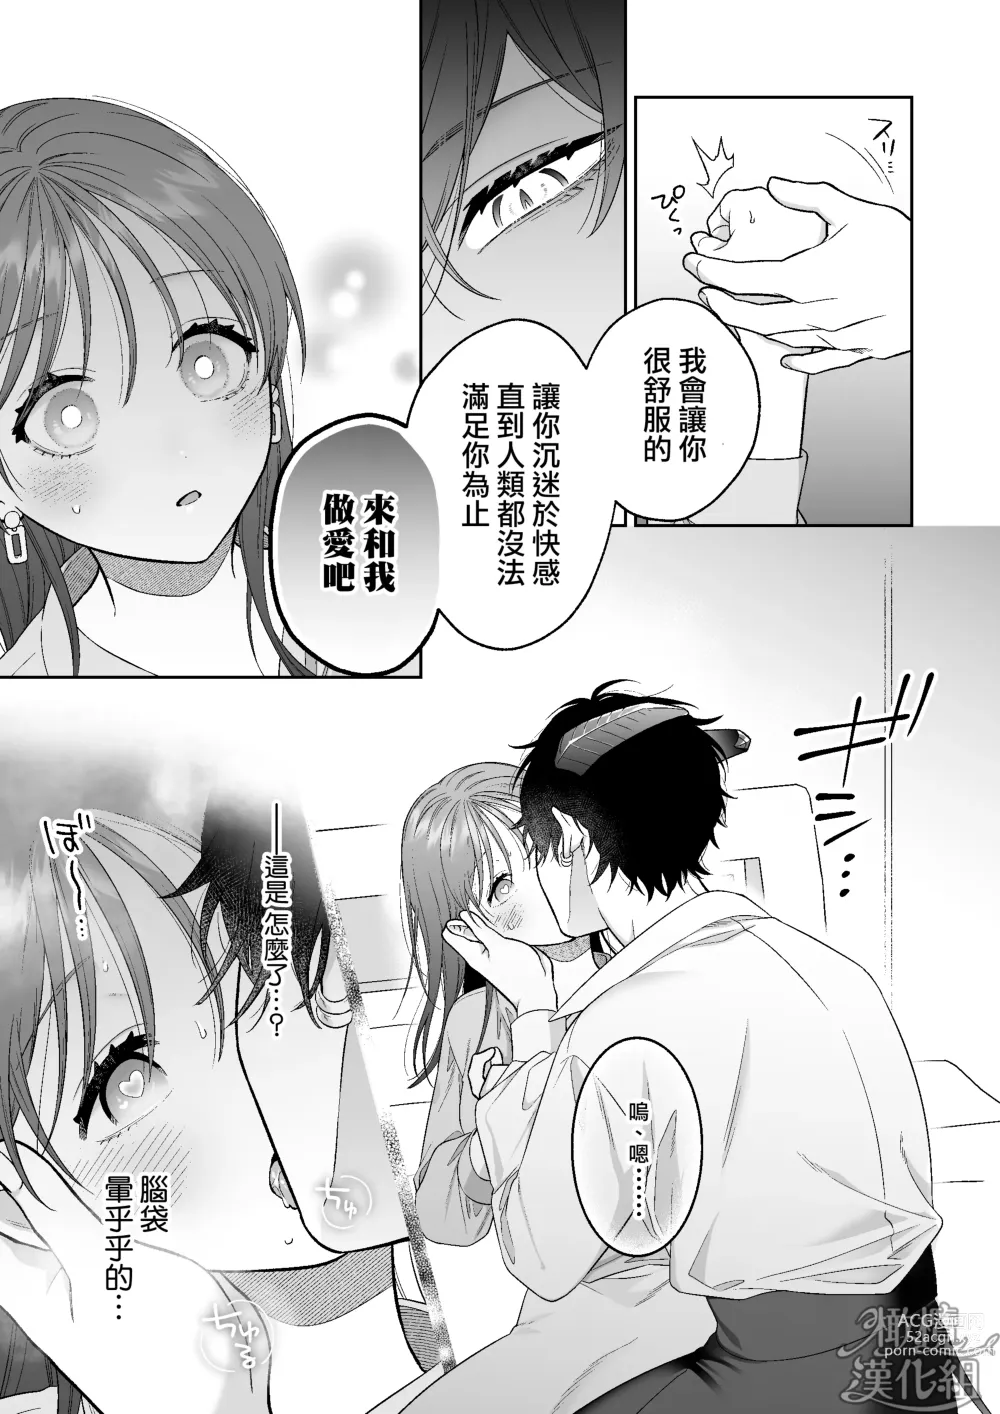 Page 11 of doujinshi 被一不小心召唤出来的爱照顾人的淫魔宠溺、然后被他溫柔的性爱攻陷了